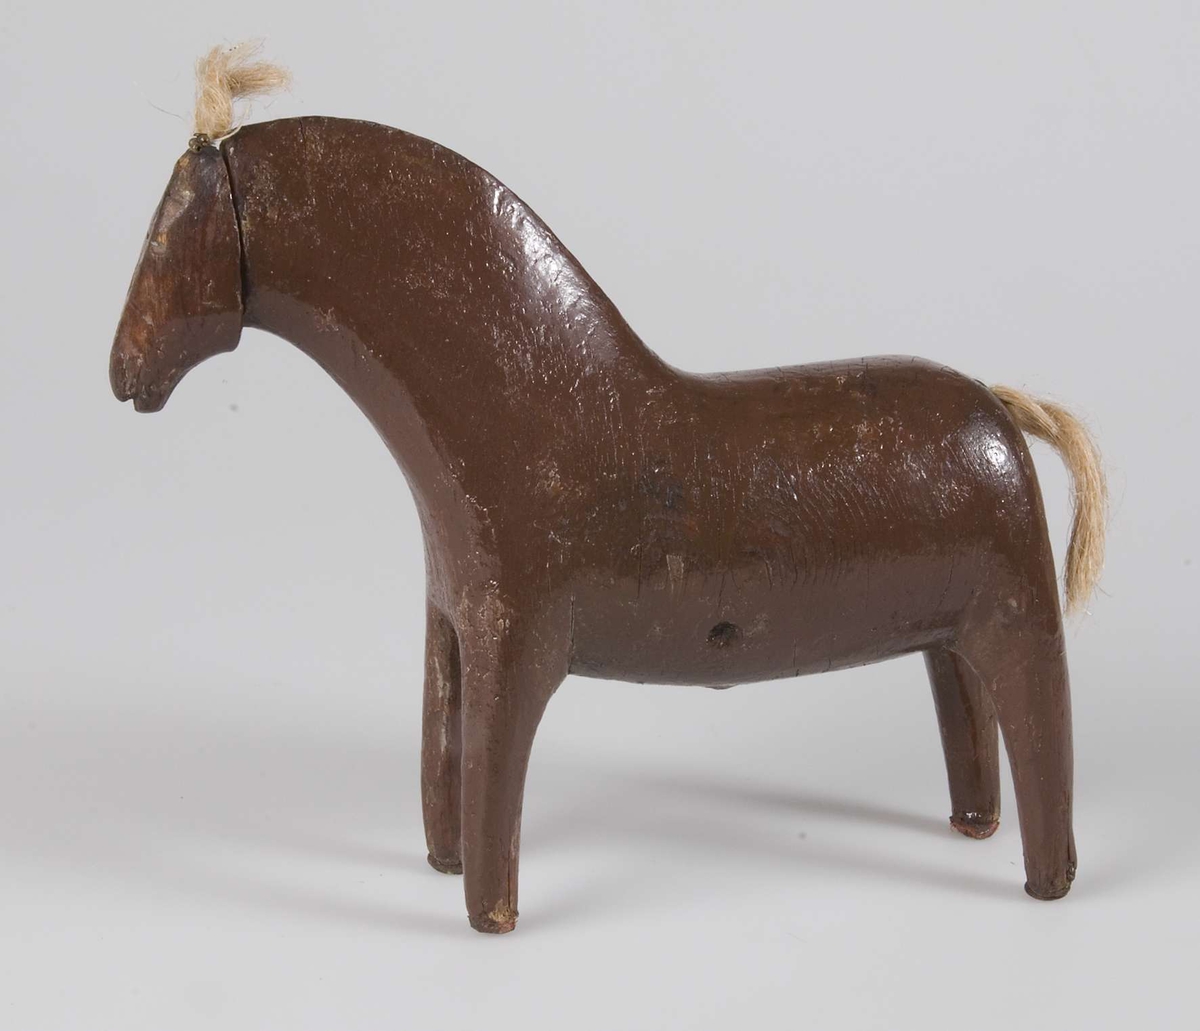 Leksaken är utformad som en häst.